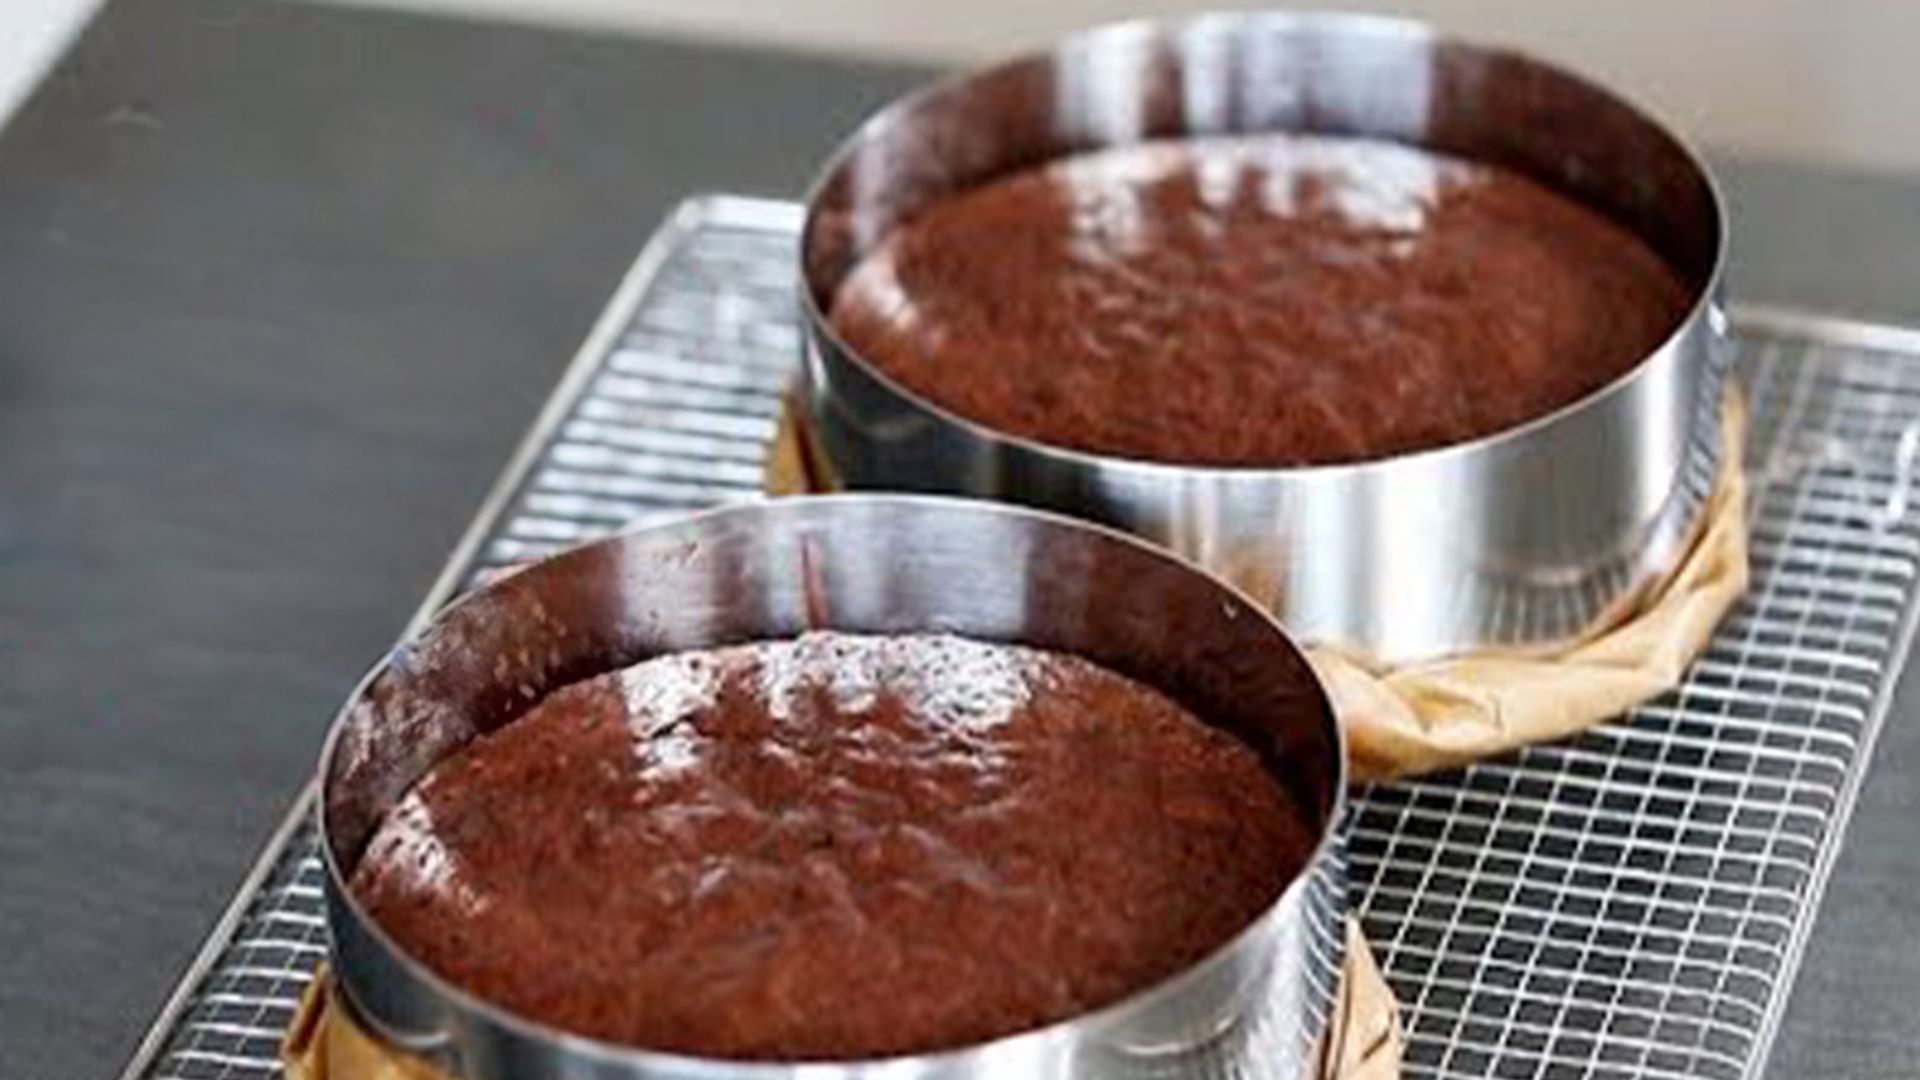 saftiger Schokoladenkuchen - ideale Grundlage für Motivtorten / Cake Basics